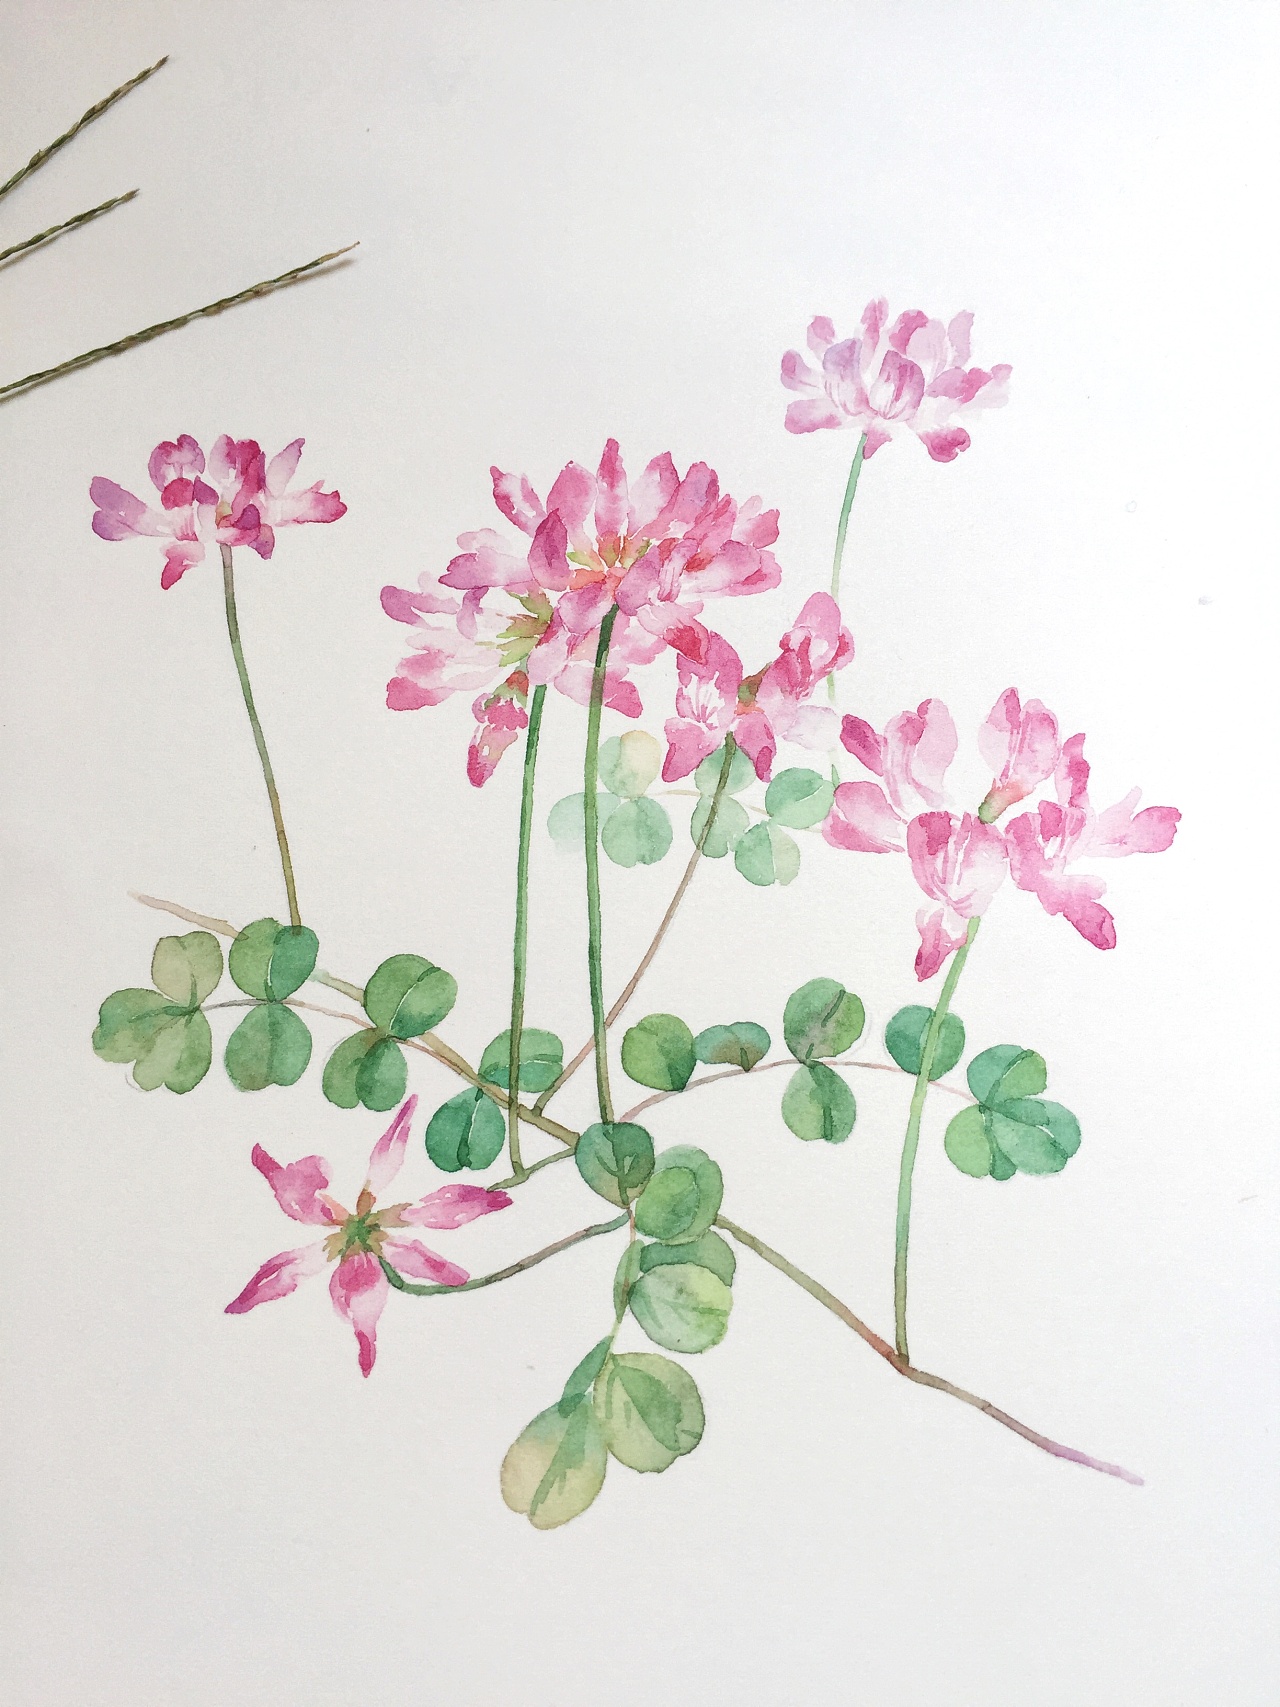 手绘鲜花花卉笔刷素材 - 爱图网设计图片素材下载